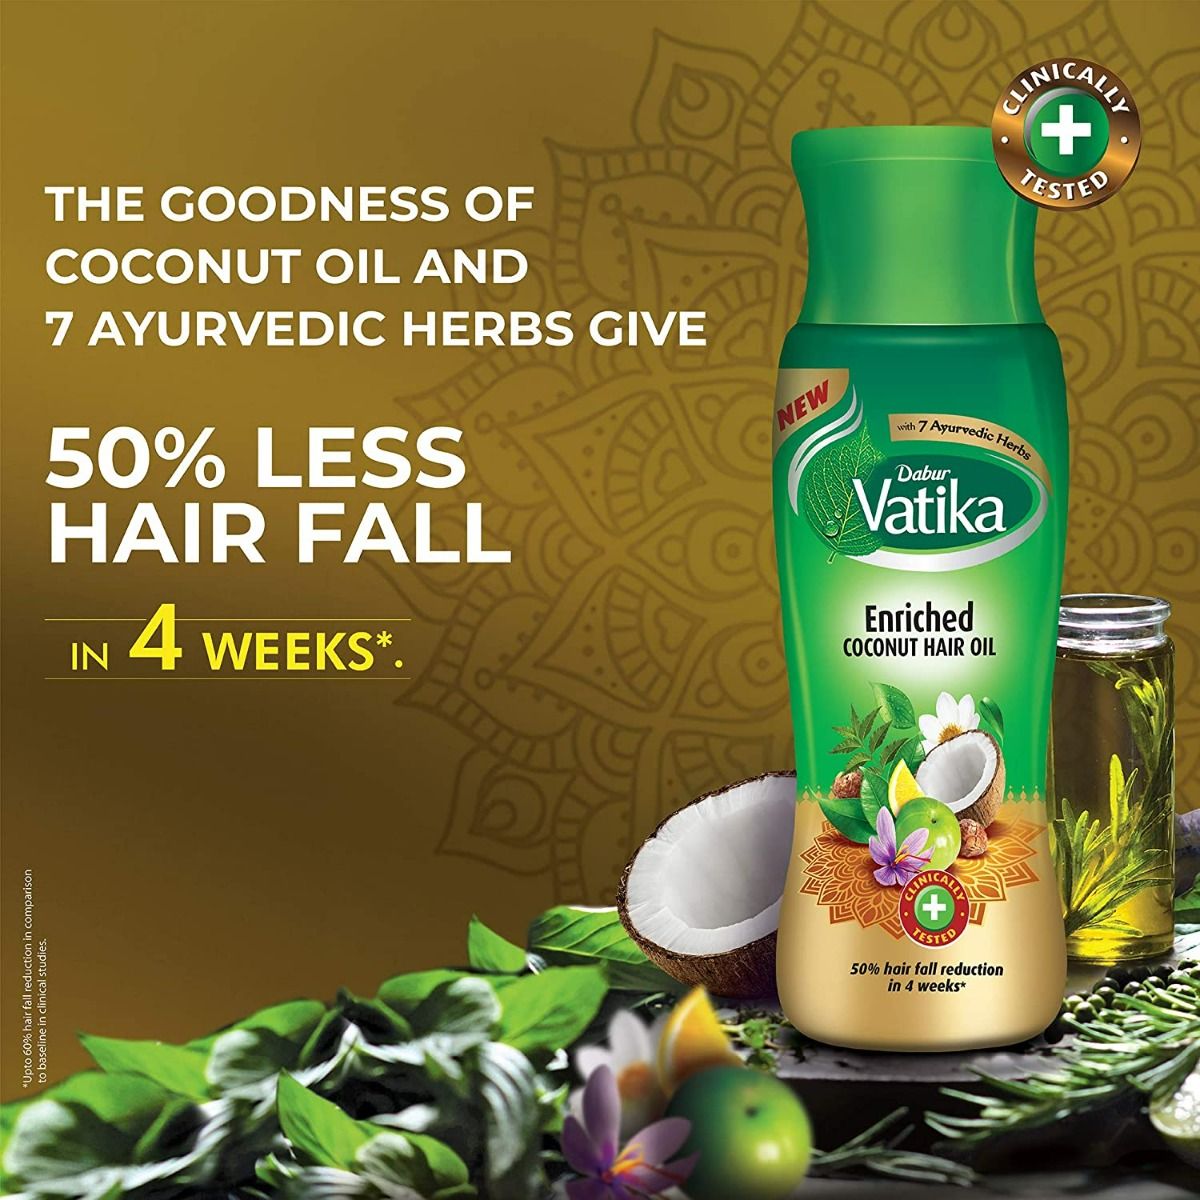 Buy Dabur Vatika Enriched Coconut Hair Oil 300ml Pack of 2 Bottles Online  at desertcartINDIA